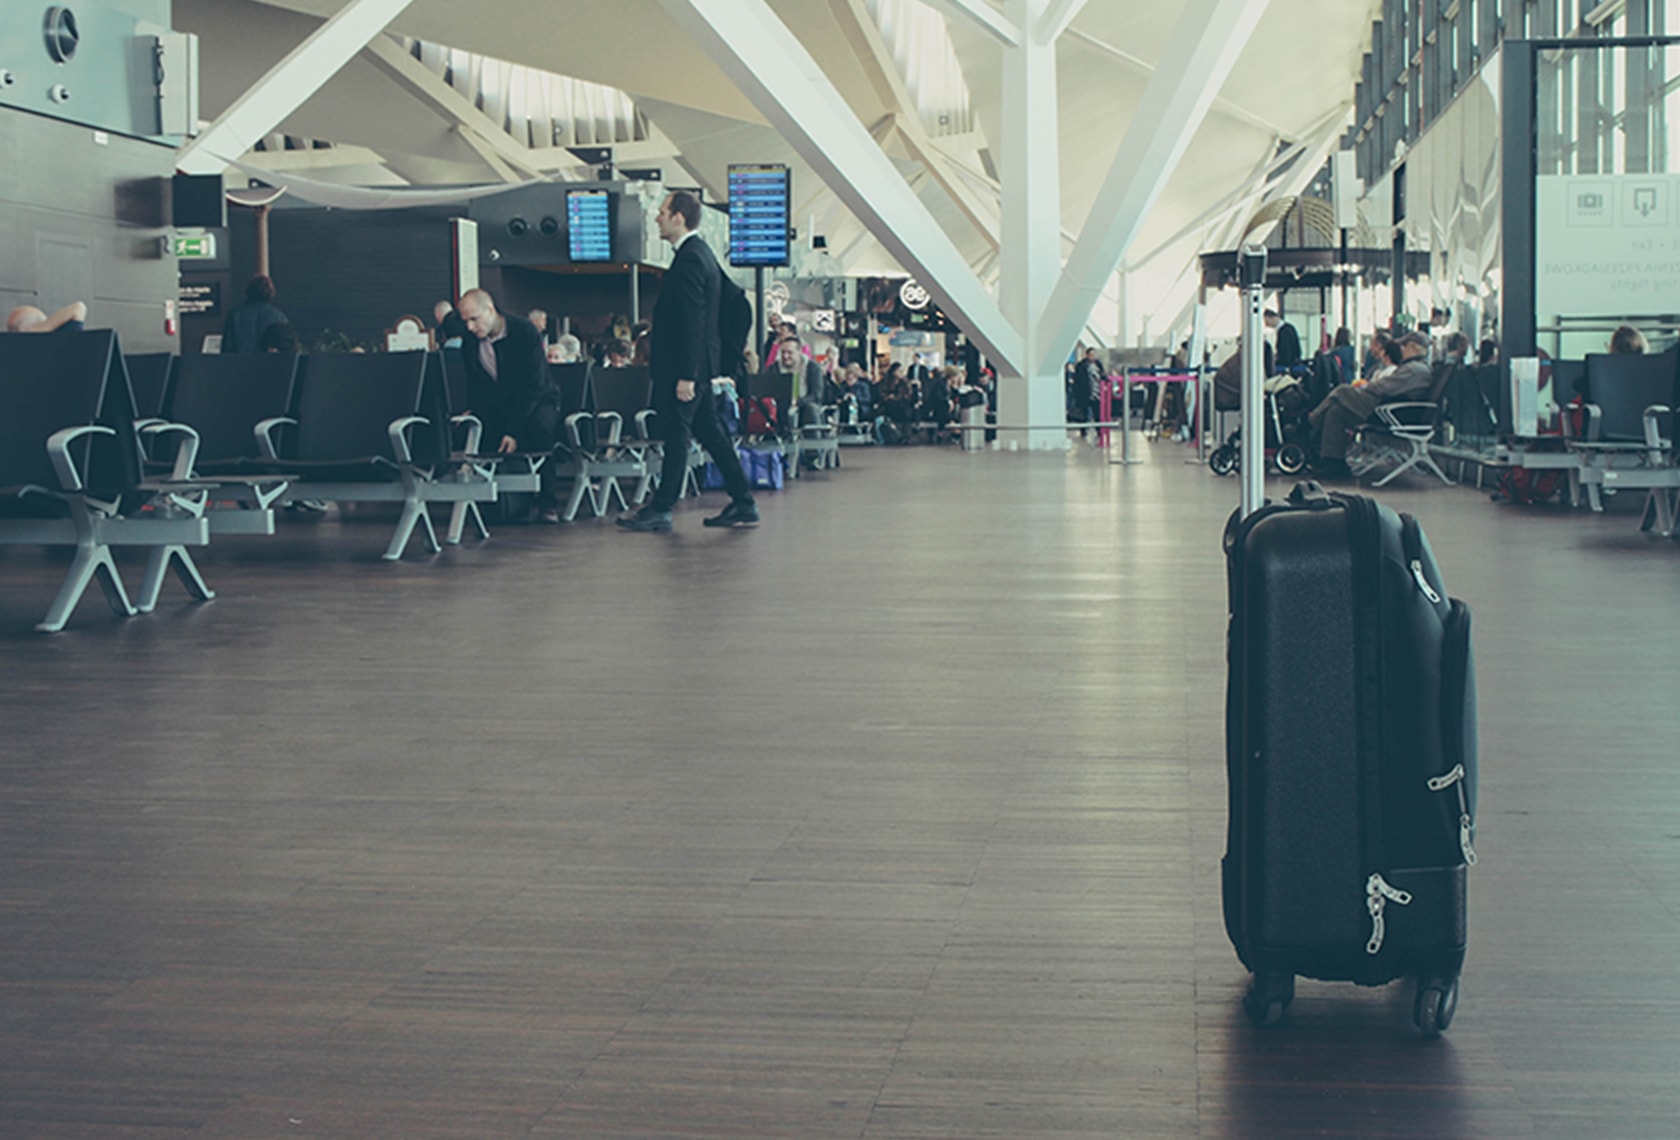 海外出張時などで持っていくスーツケースのサイズの選び方について解説した記事中のイメージ画像です。空港ロビーに置かれたスーツケースを写しています。